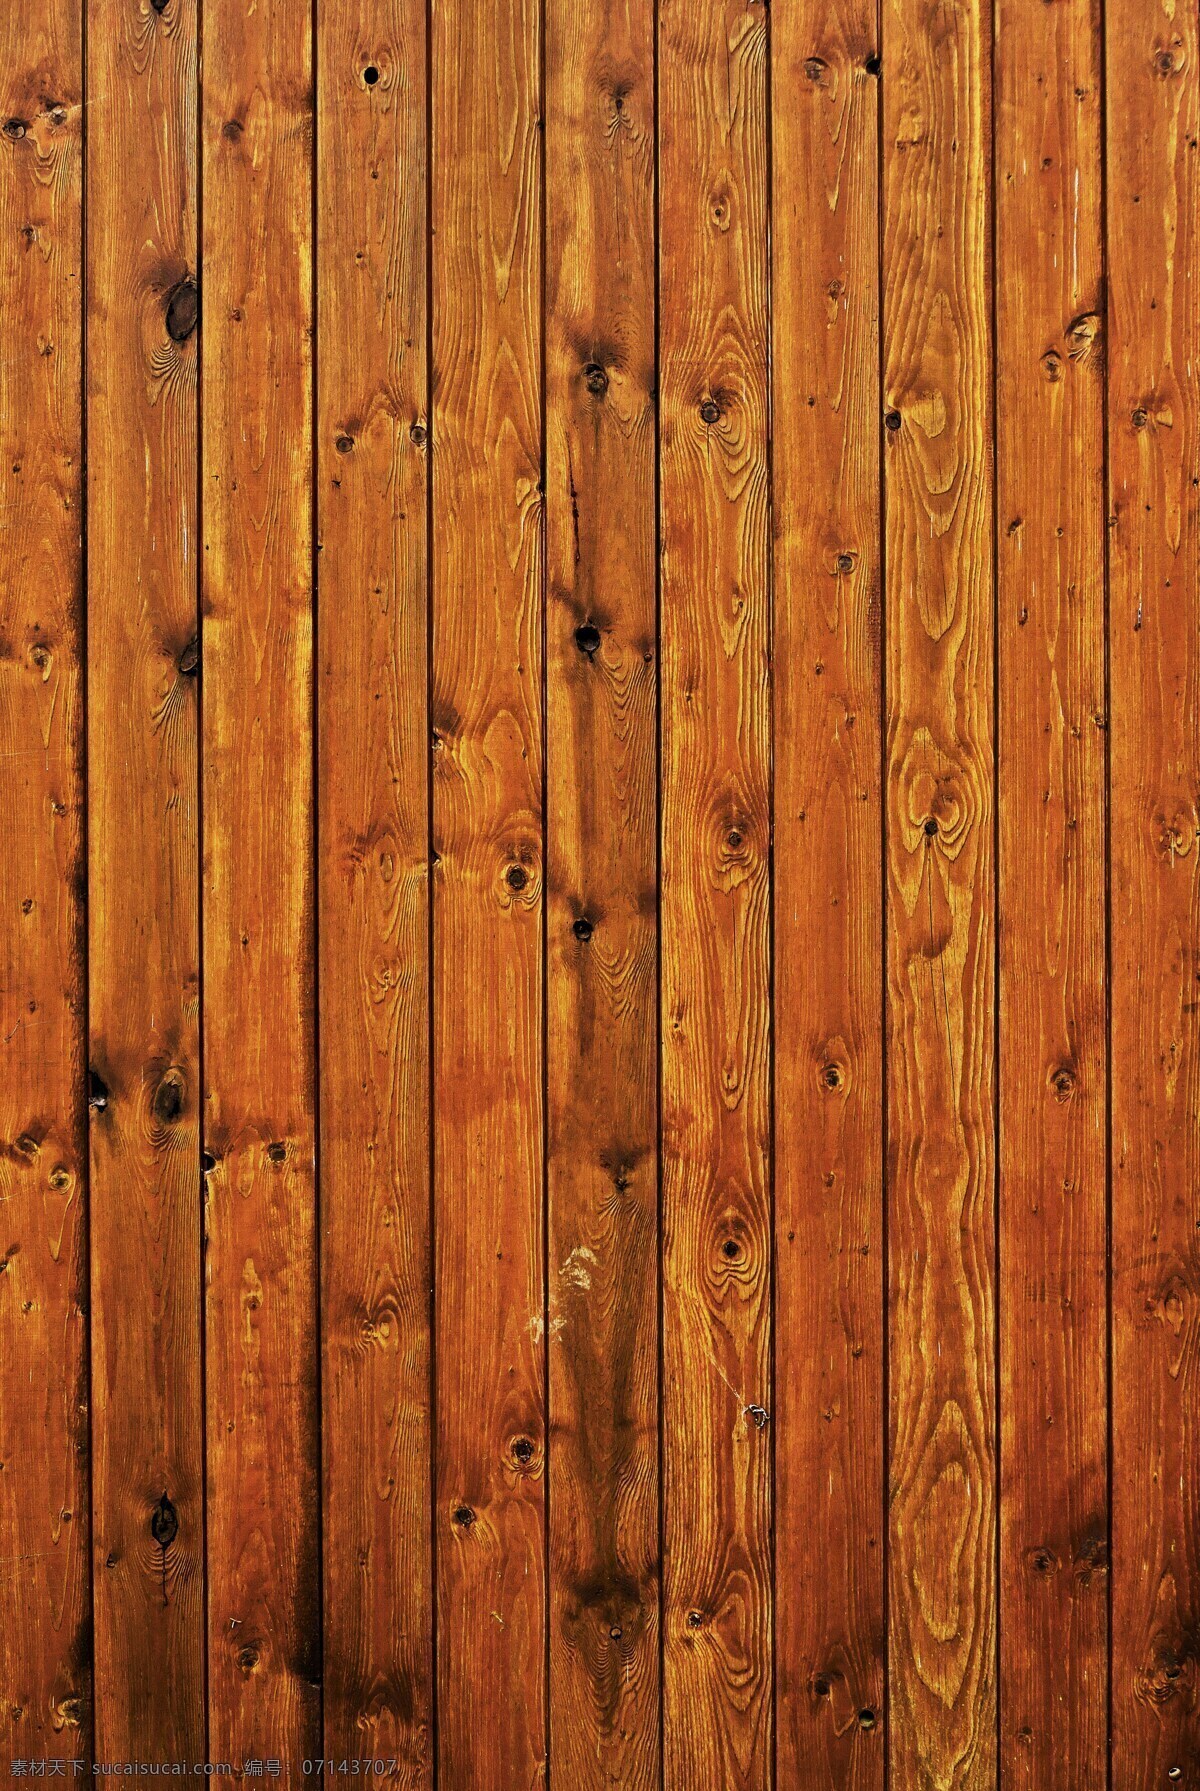 木纹背景 木 板 仿古 配置文件 的木头 树枝 云杉 云杉木 风化 巴登斯 背景 木板 面板 背景木 模式 纹理 木材纹理 背景图像 结构 材料 表面 木纹 石纹 底纹